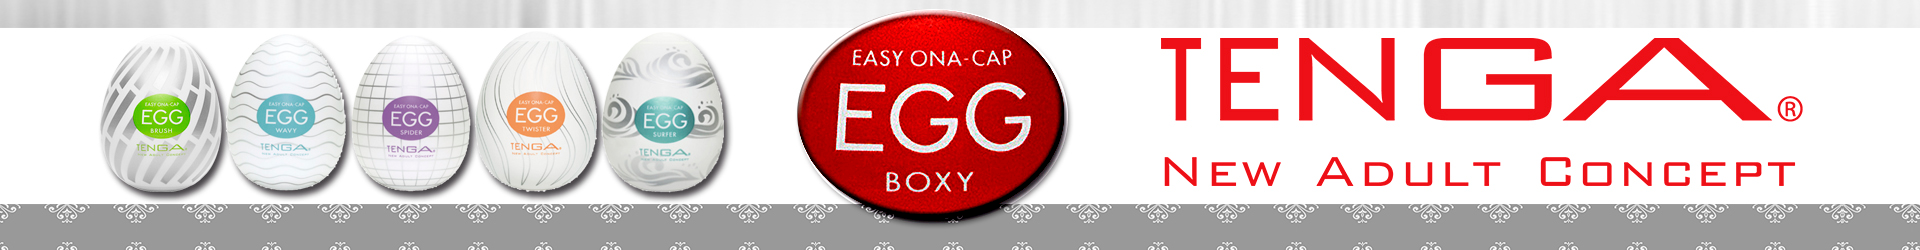 https://0201.nccdn.net/4_2/000/000/078/264/Egg-Tenga---Banner---Ponle-Sabor-1-.png